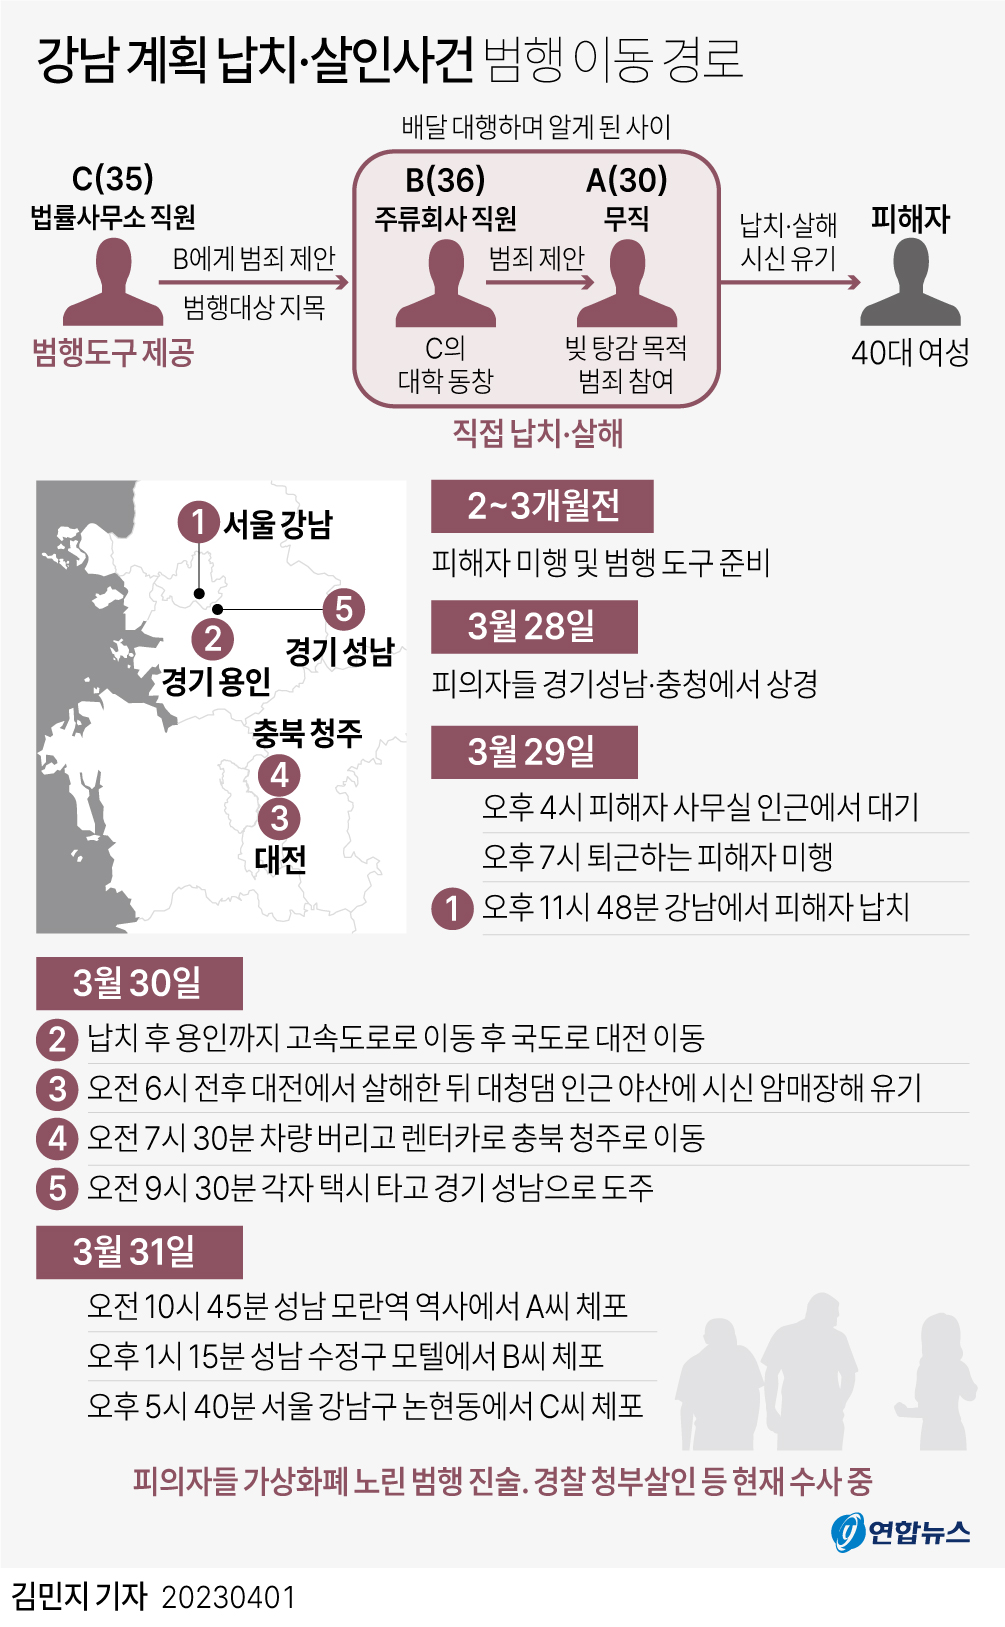 [그래픽] 강남 계획 납치·살인사건 범행 이동 경로